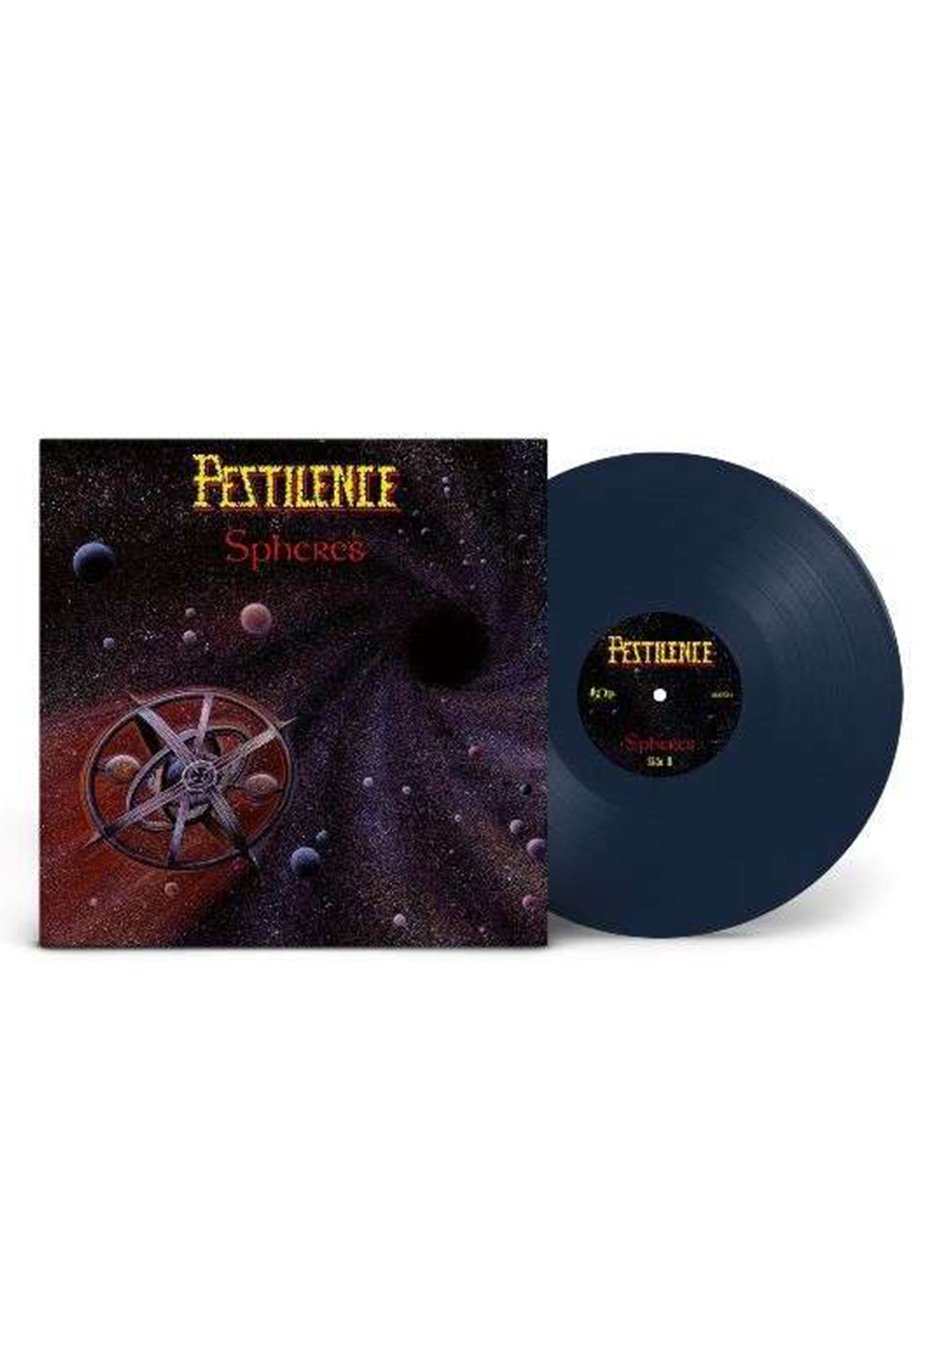 Pestilence - Spheres (Remastered) Ltd. Navy Blue - Colored Vinyl